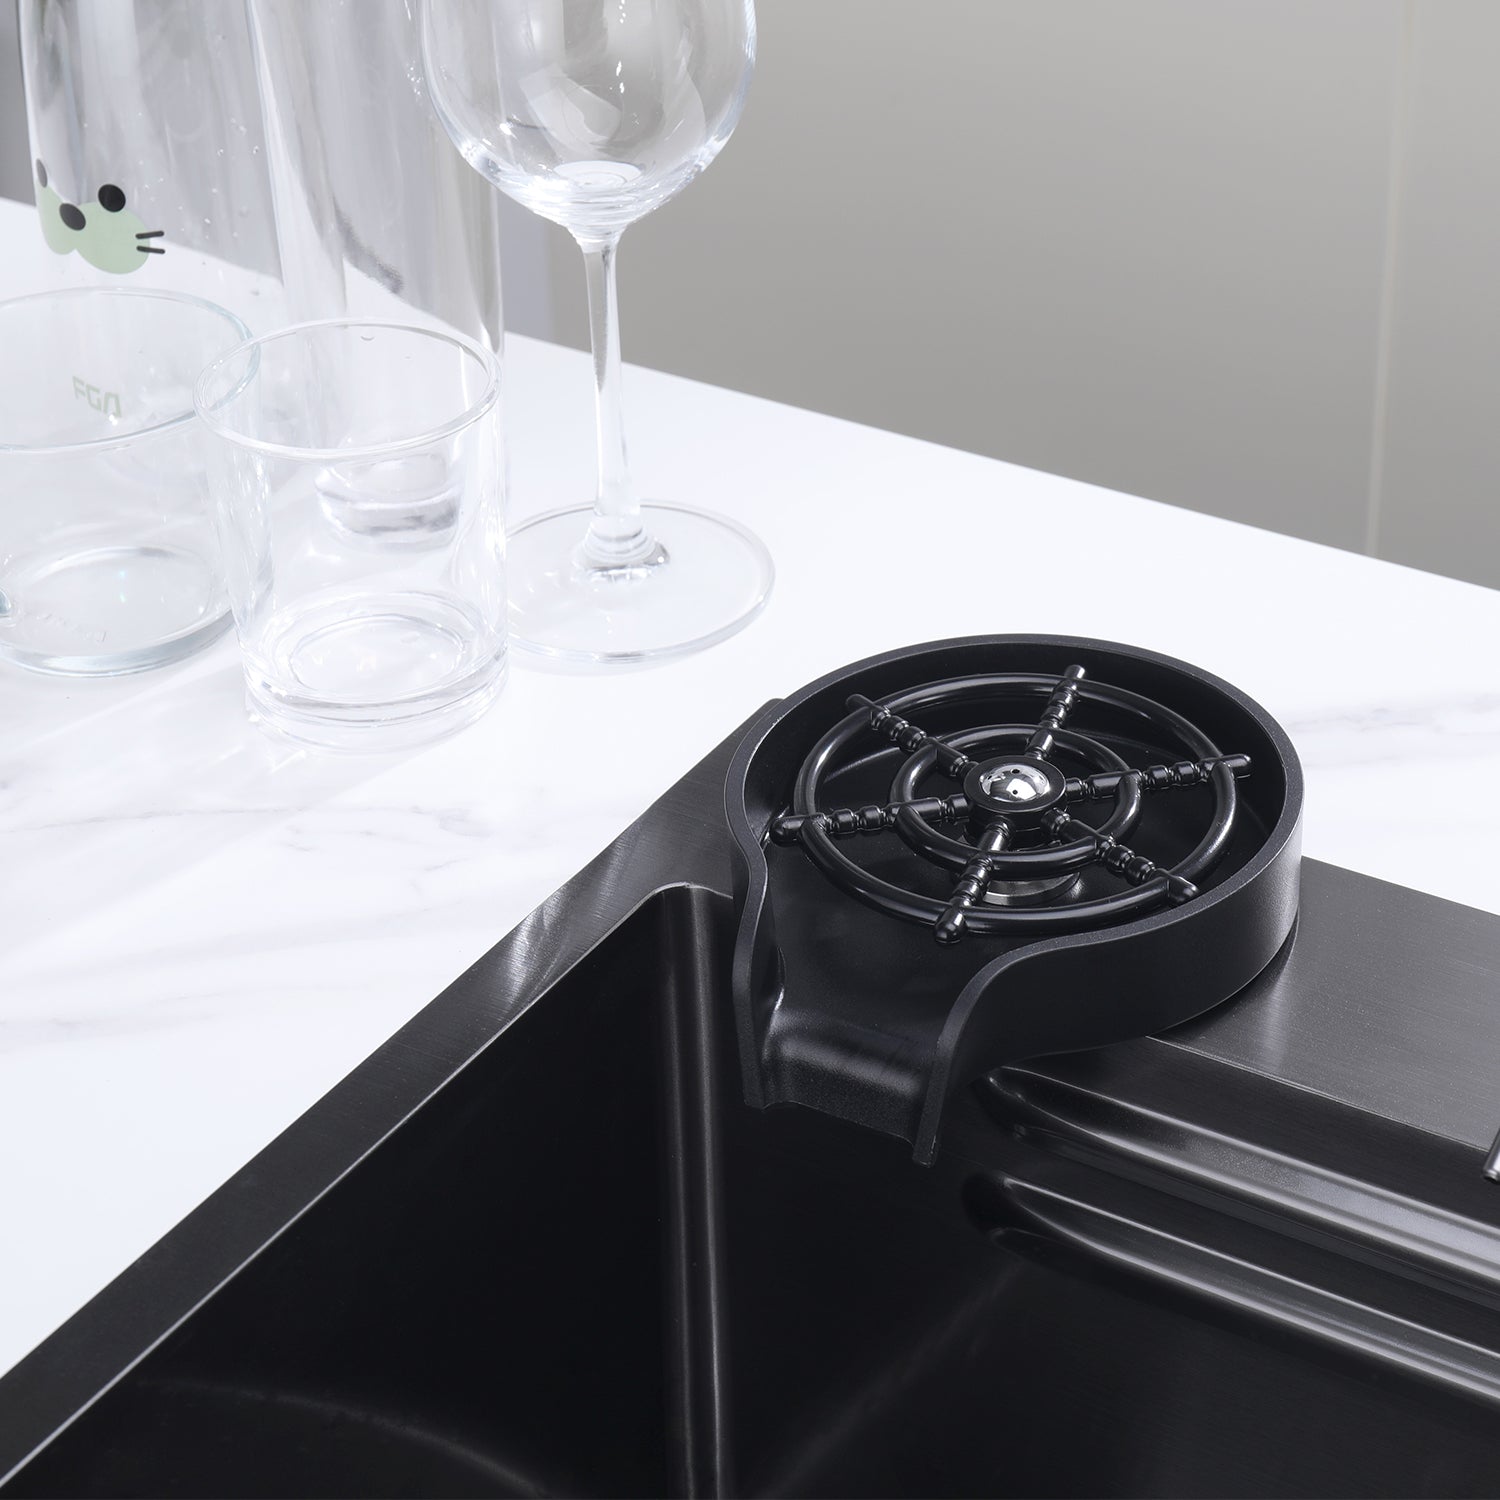 Lefton Kitchen Sink Glass Rinser For Home / Cafe / Bar / Restaurant